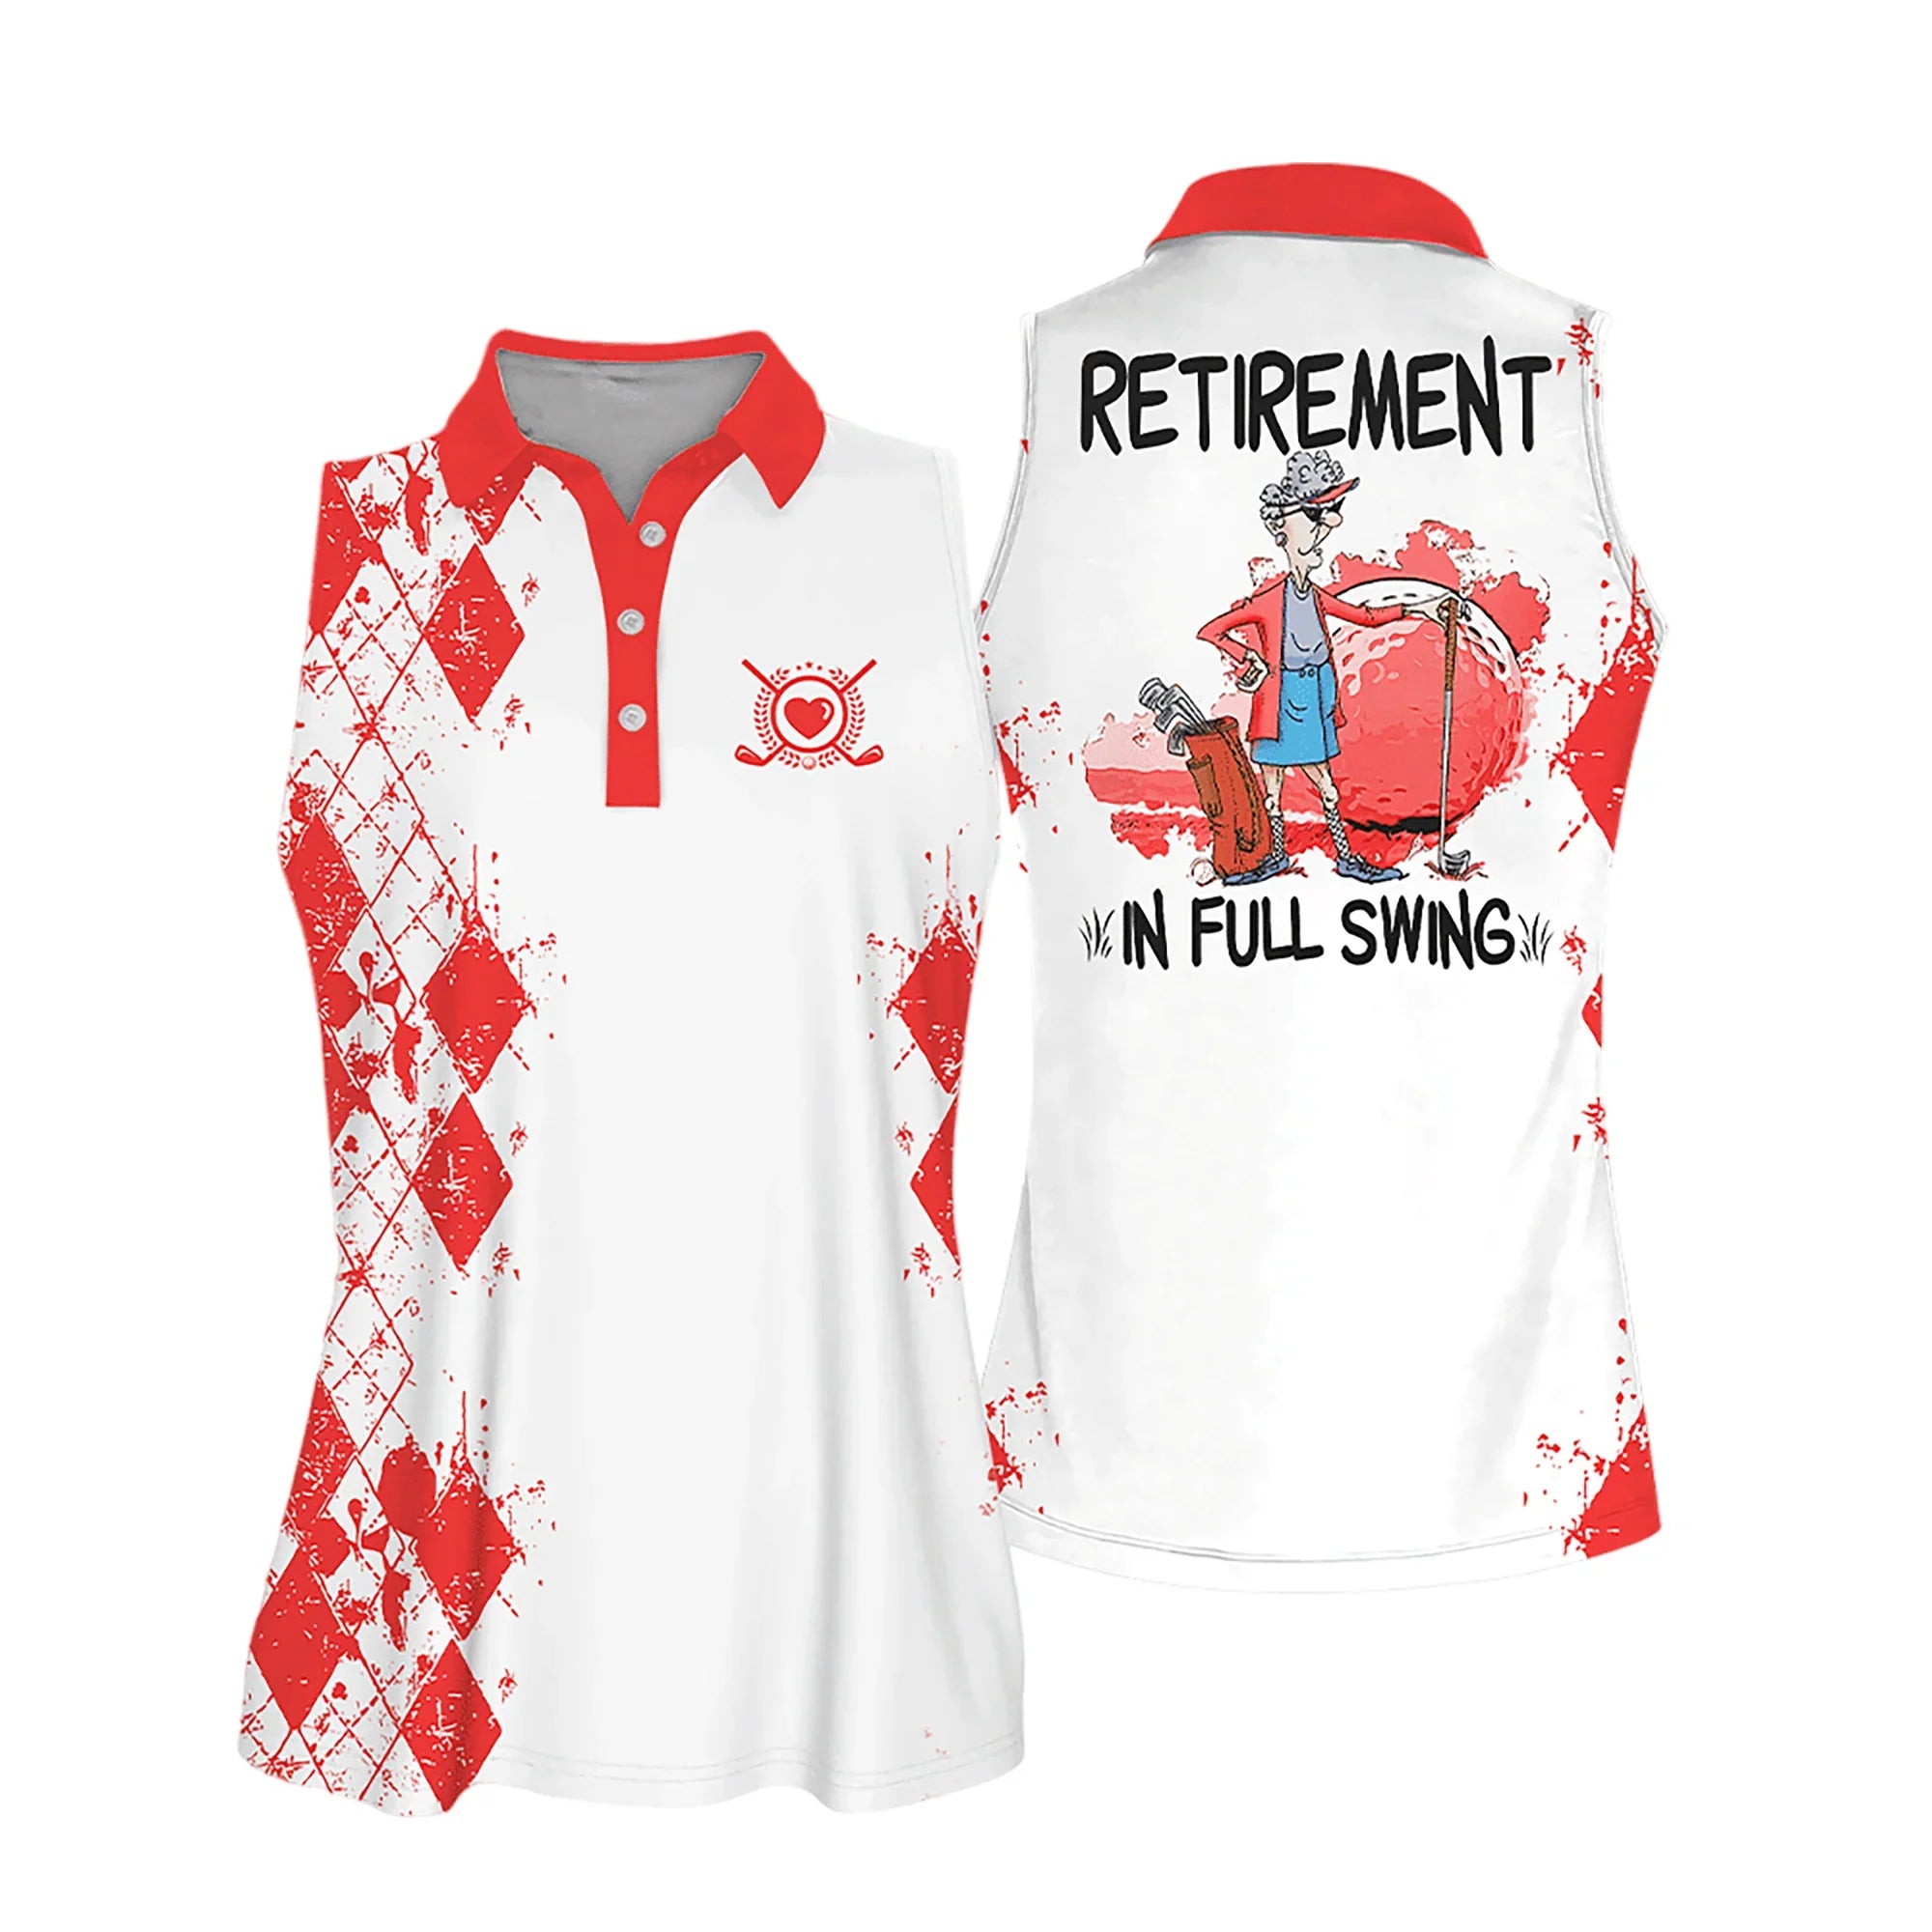 Sleeveless Women Polo Shirt For Ladies/ Retirement In Full Swing Shirt/ Golf Retirement Shirt